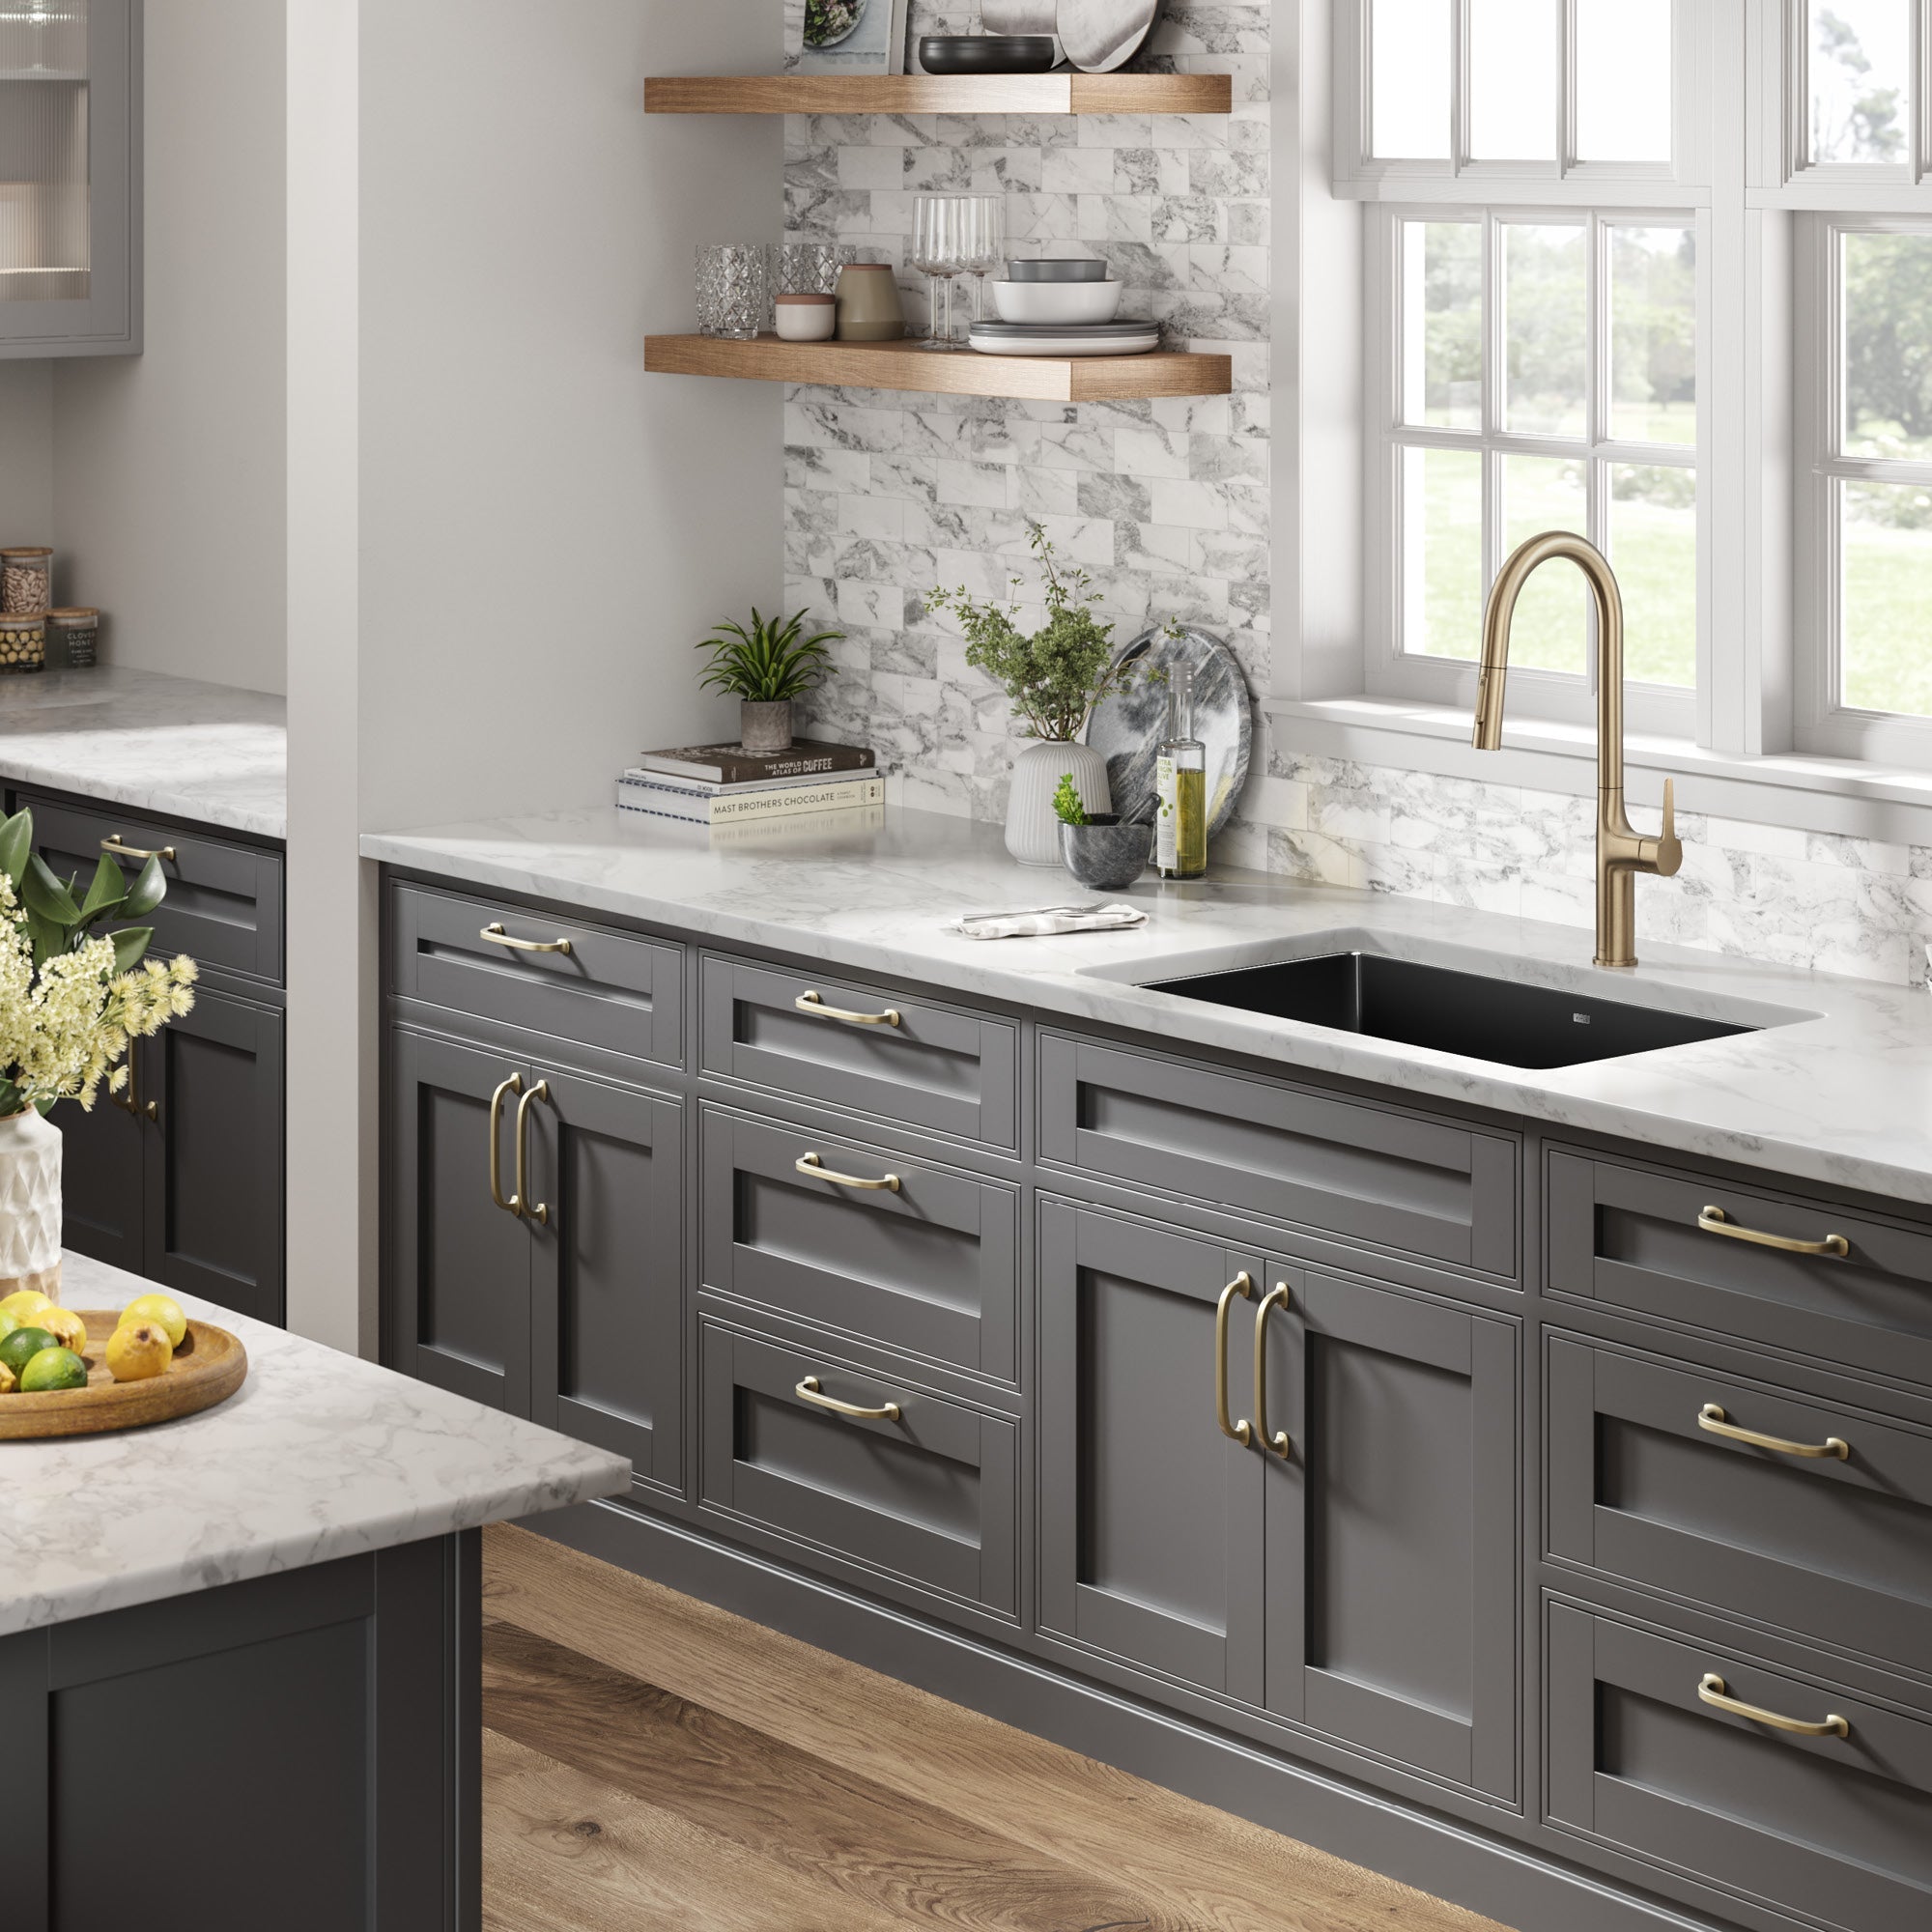 Decorator Kitchen Sink Drain Board, Copper, Black Granite